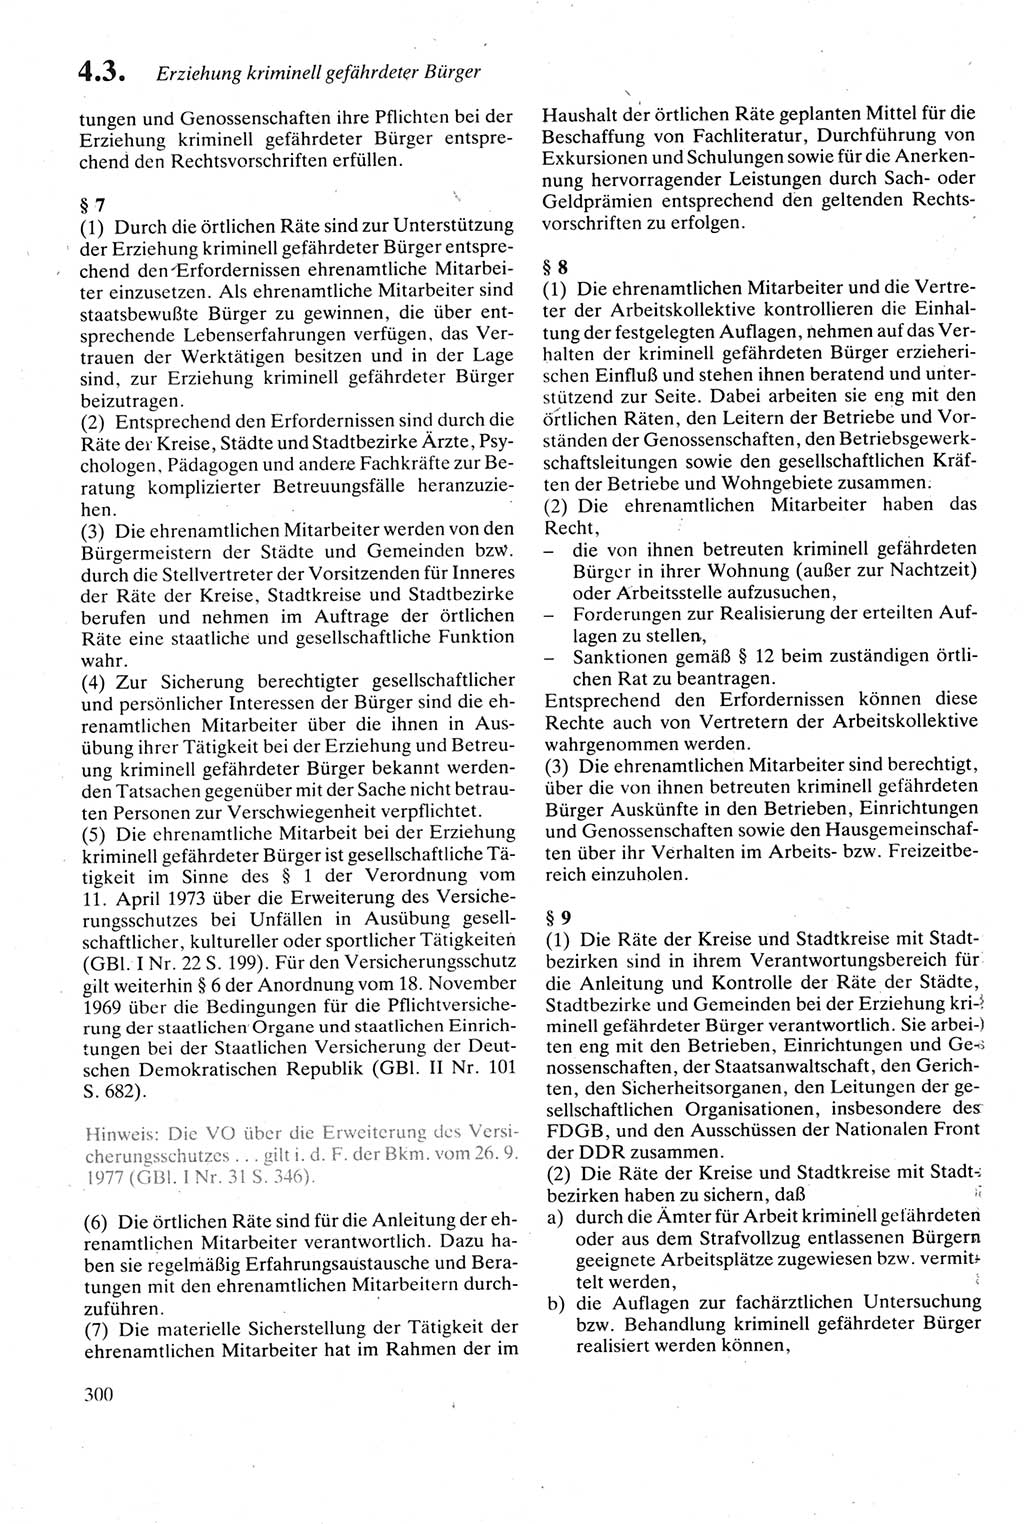 Strafgesetzbuch (StGB) der Deutschen Demokratischen Republik (DDR) sowie angrenzende Gesetze und Bestimmungen 1979, Seite 300 (StGB DDR Ges. Best. 1979, S. 300)